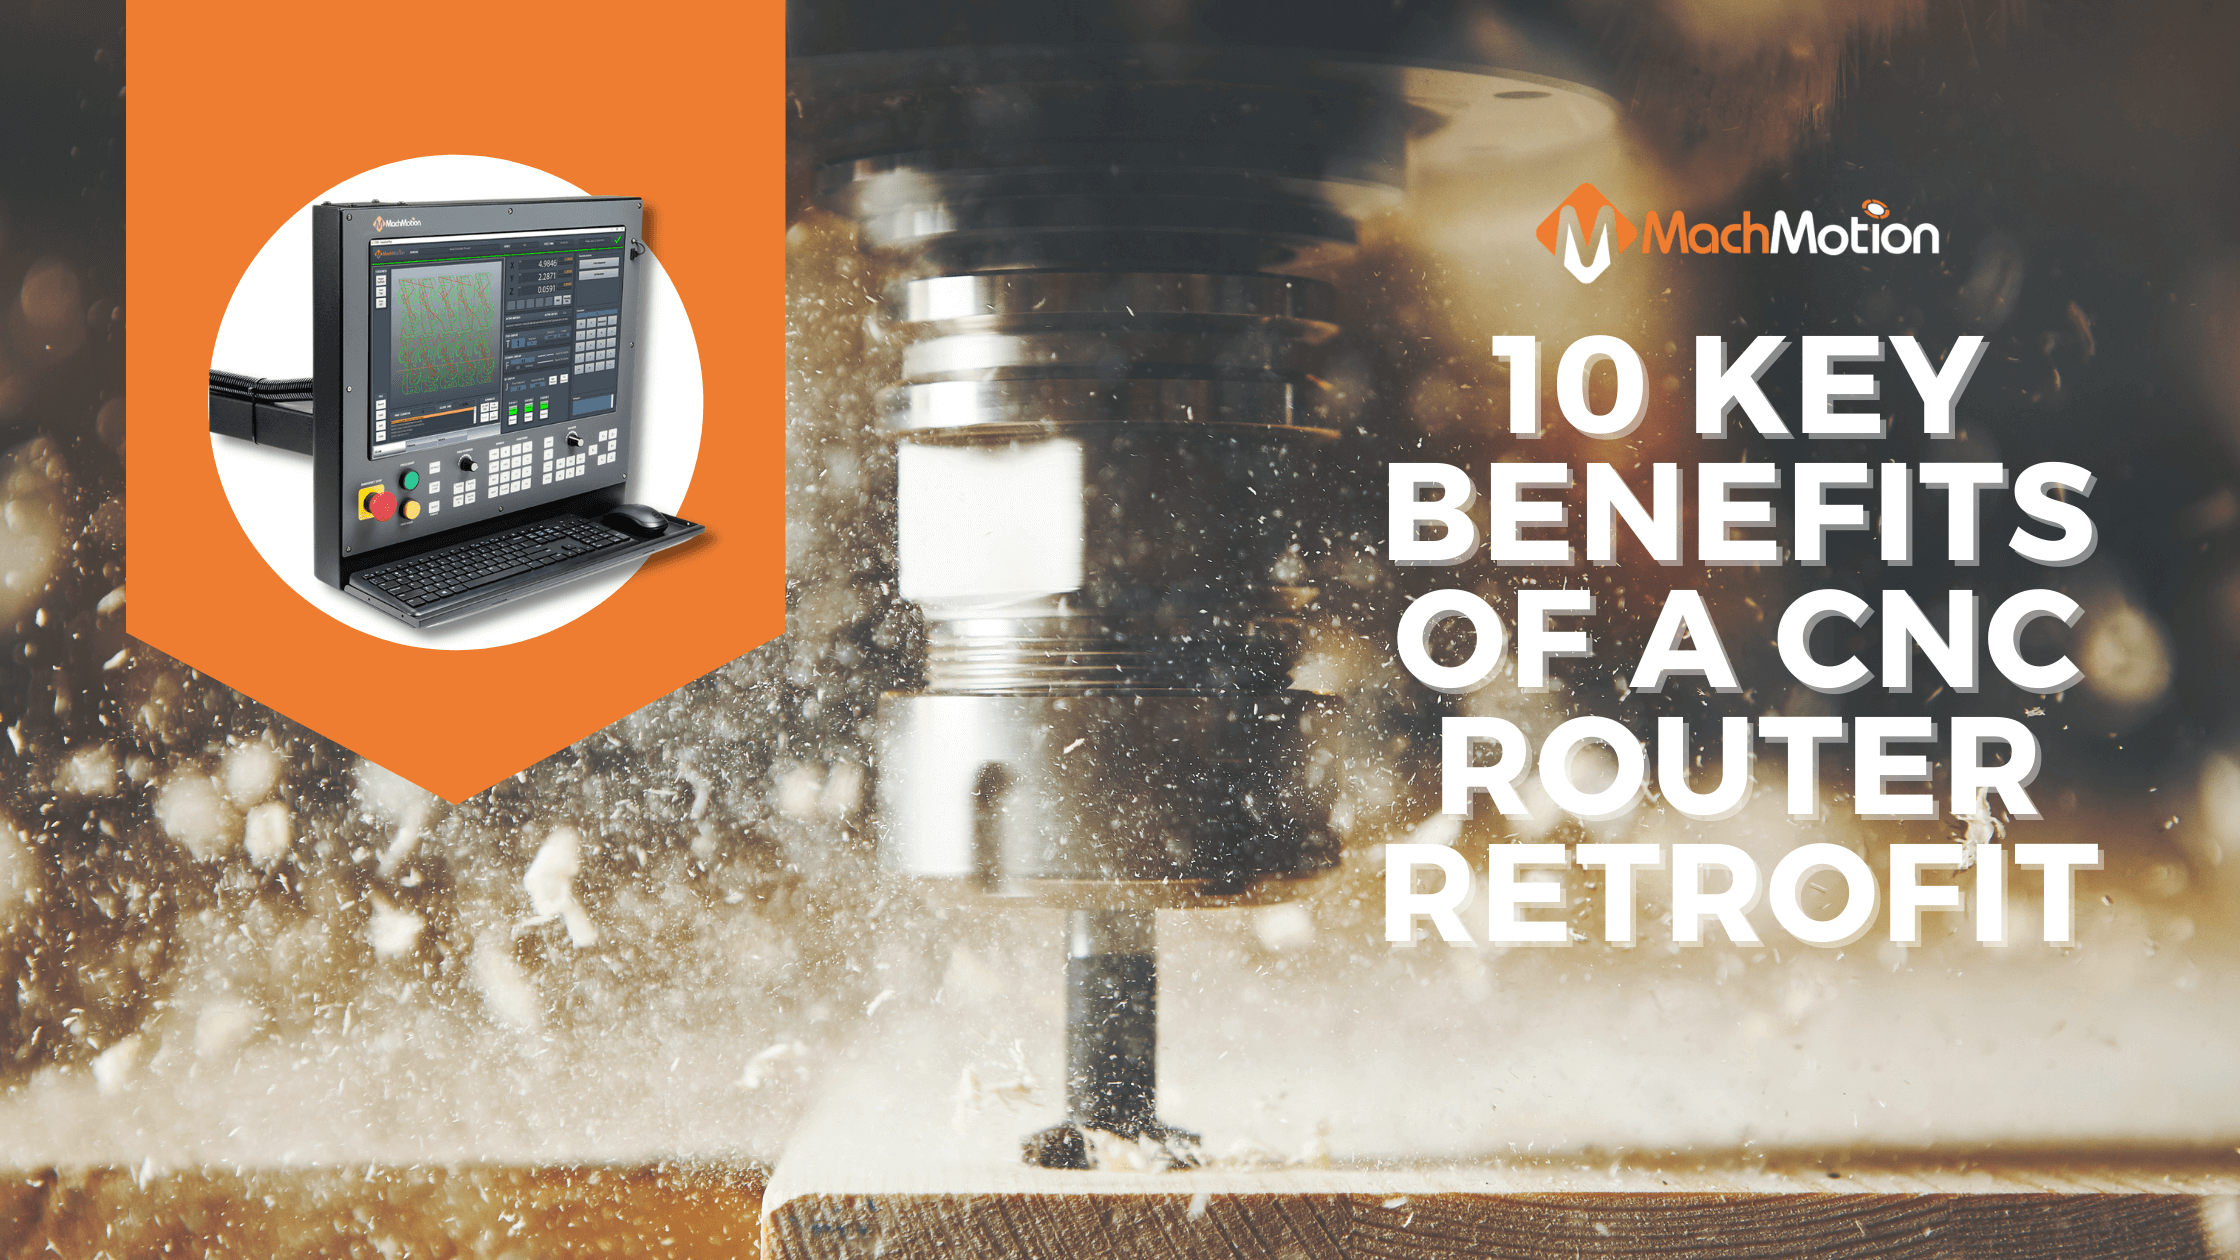 MachMotion 10 Benefits of a CNC Router Retrofit